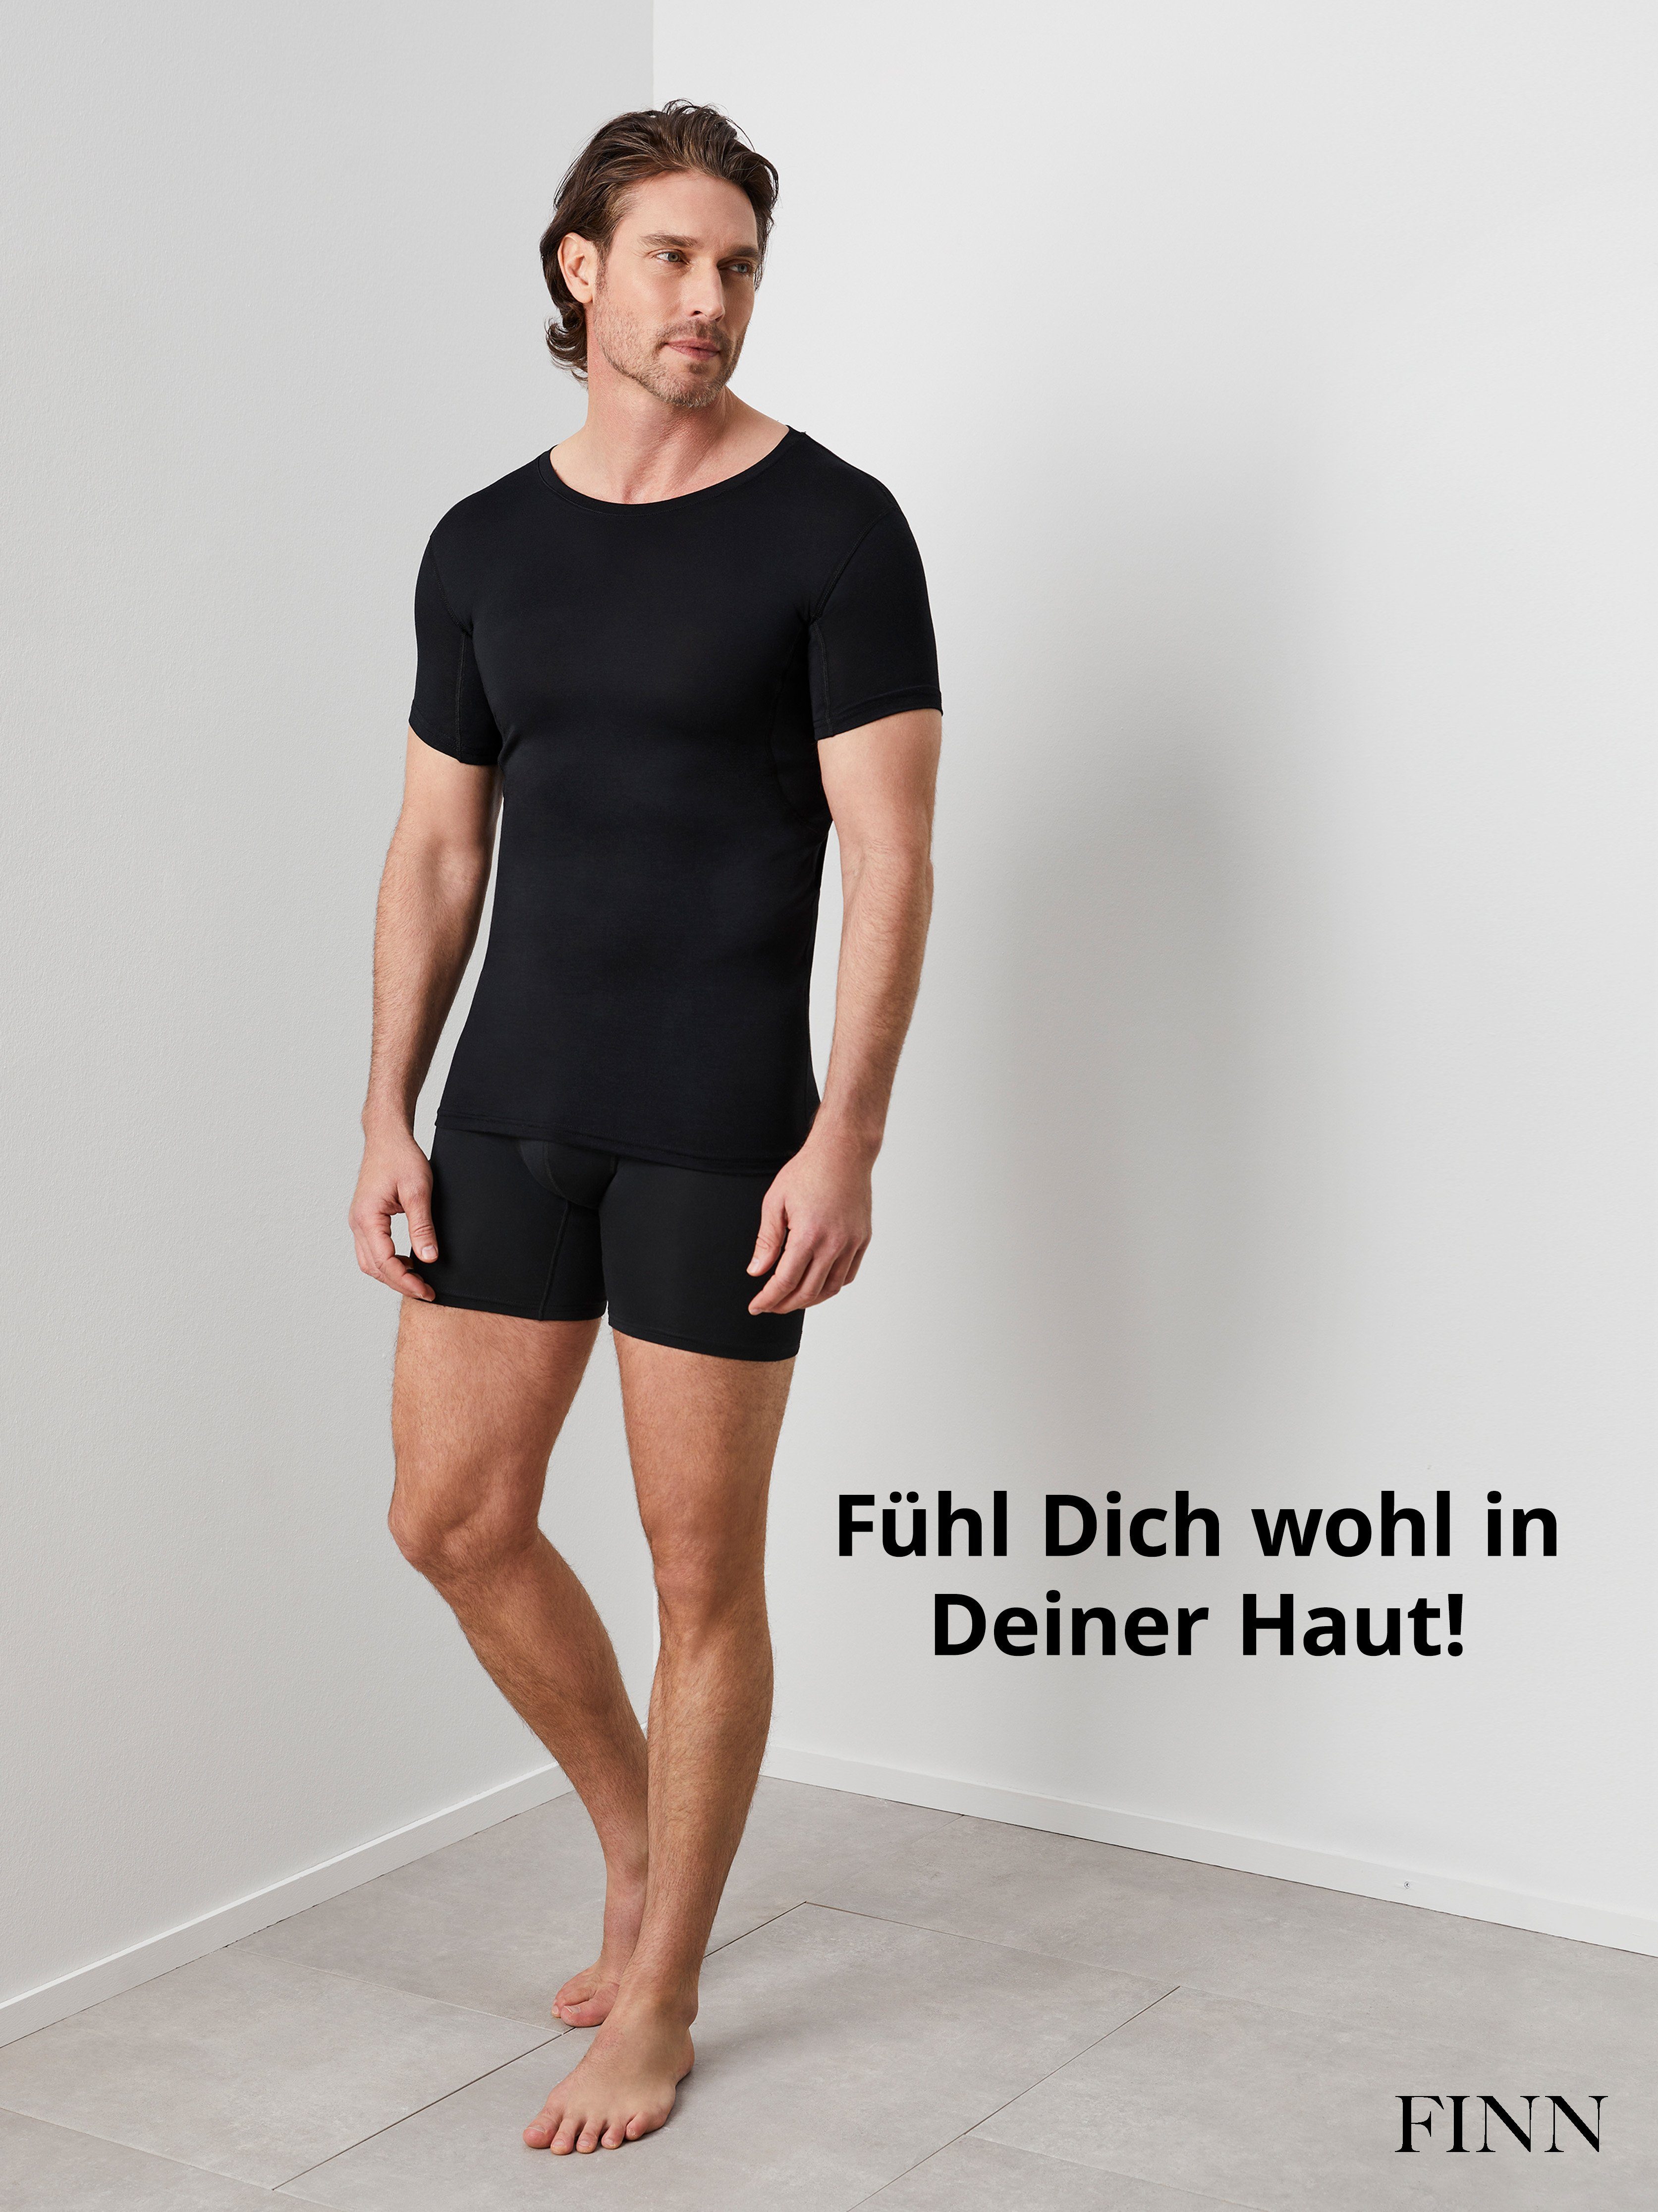 Schwarz Unterhemd Schweißflecken, Rundhals garantierte Unterhemd Schutz Design Herren 100% vor mit Anti-Schweiß Wirkung FINN